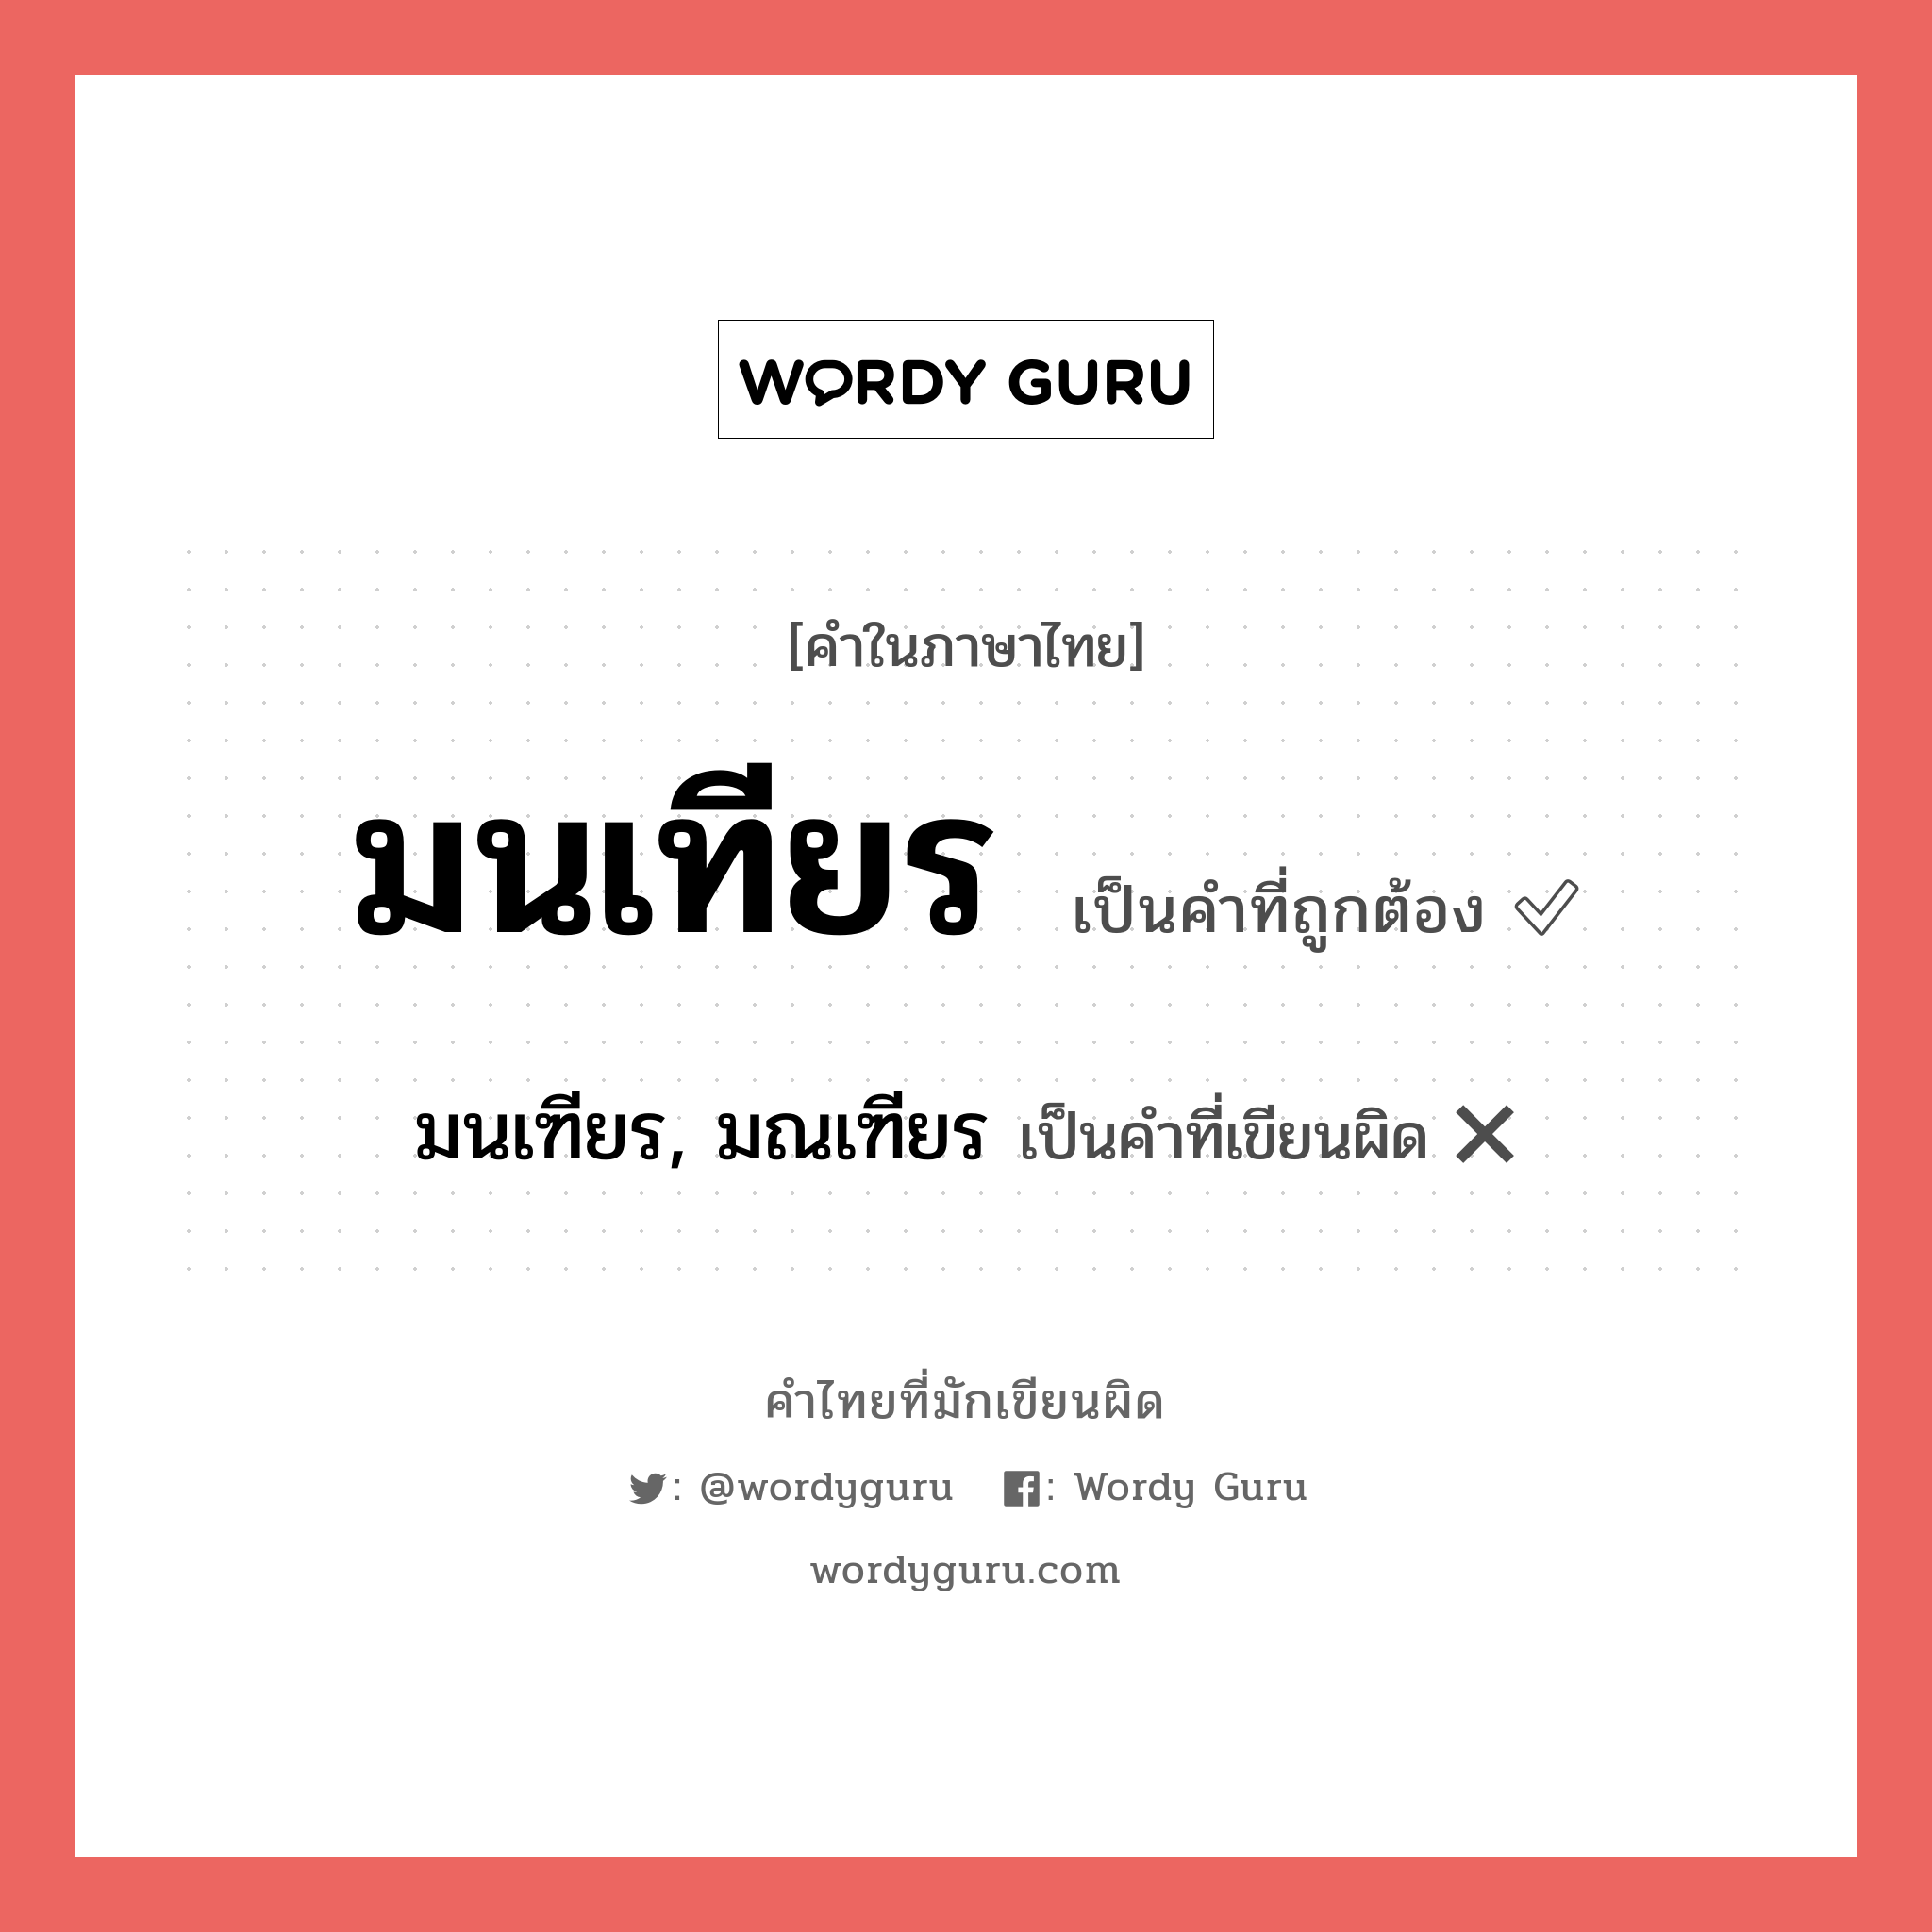 มนเฑียร, มณเฑียร หรือ มนเทียร คำไหนเขียนถูก?, คำในภาษาไทยที่มักเขียนผิด มนเฑียร, มณเฑียร คำที่ผิด ❌ มนเทียร